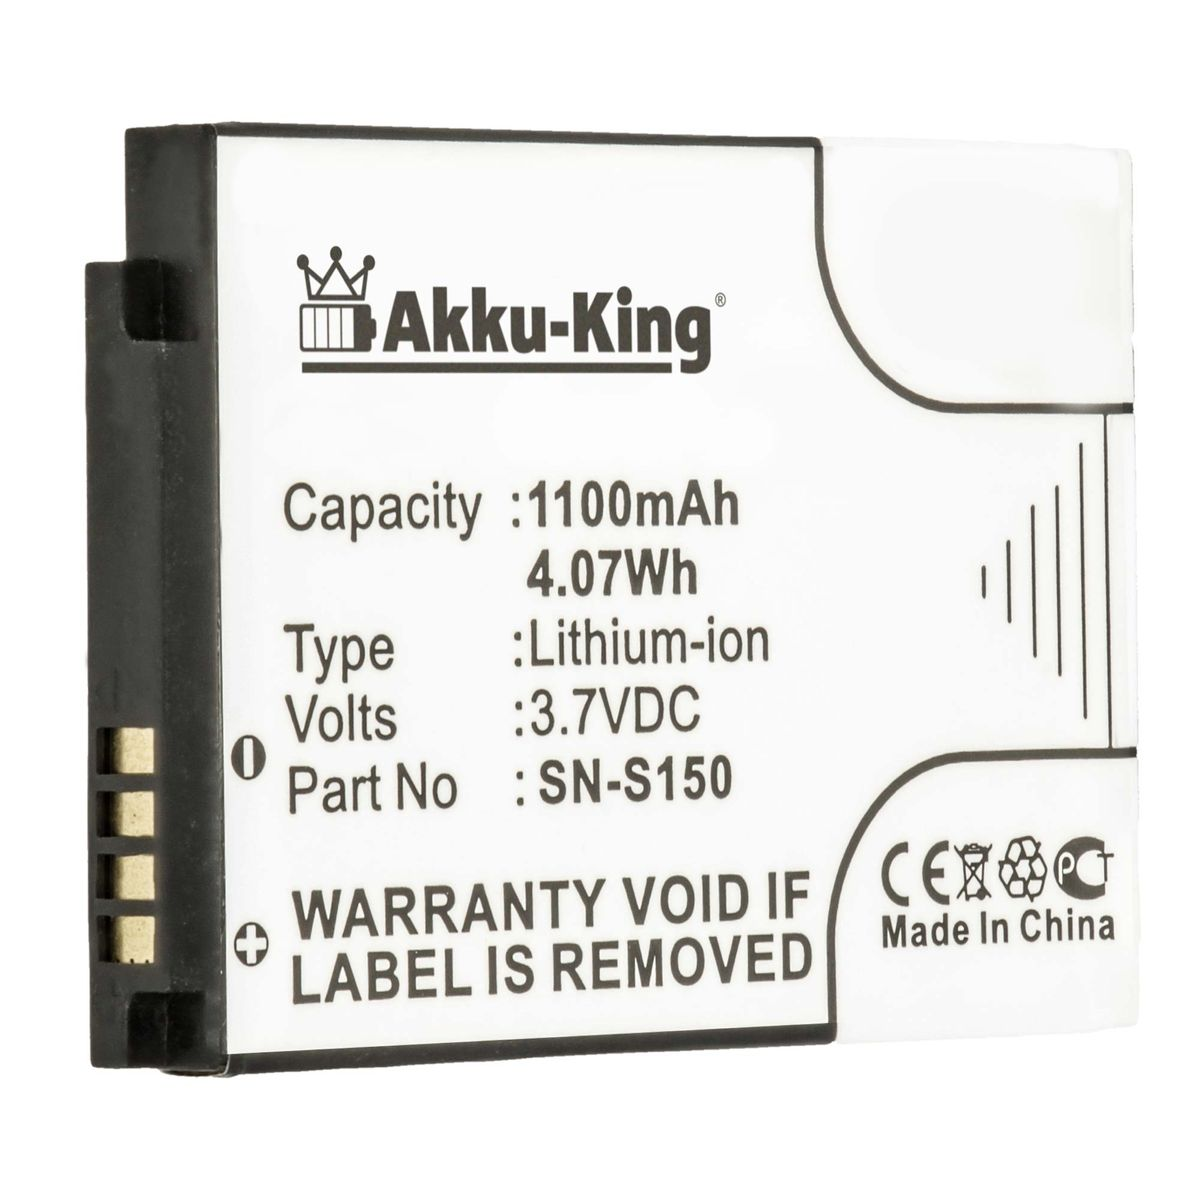 Geräte-Akku, Akku Philips AKKU-KING 3.7 1100mAh Li-Ion kompatibel N-S150 mit Volt,